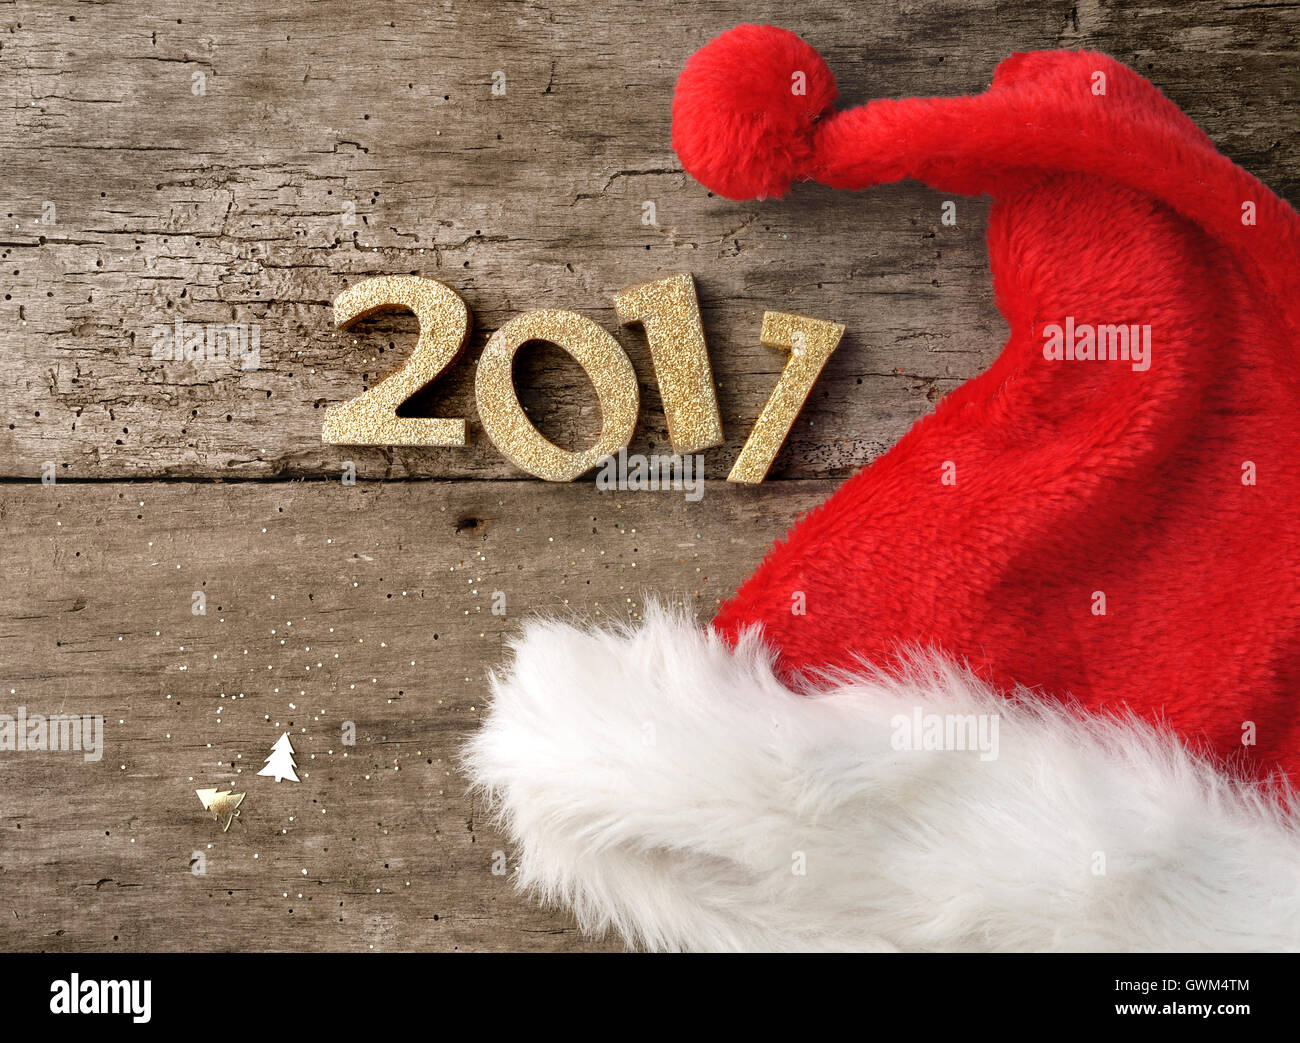 Bonnet de fourrure Santa sur un fond en bois rustique avec des chiffres 2017 Banque D'Images